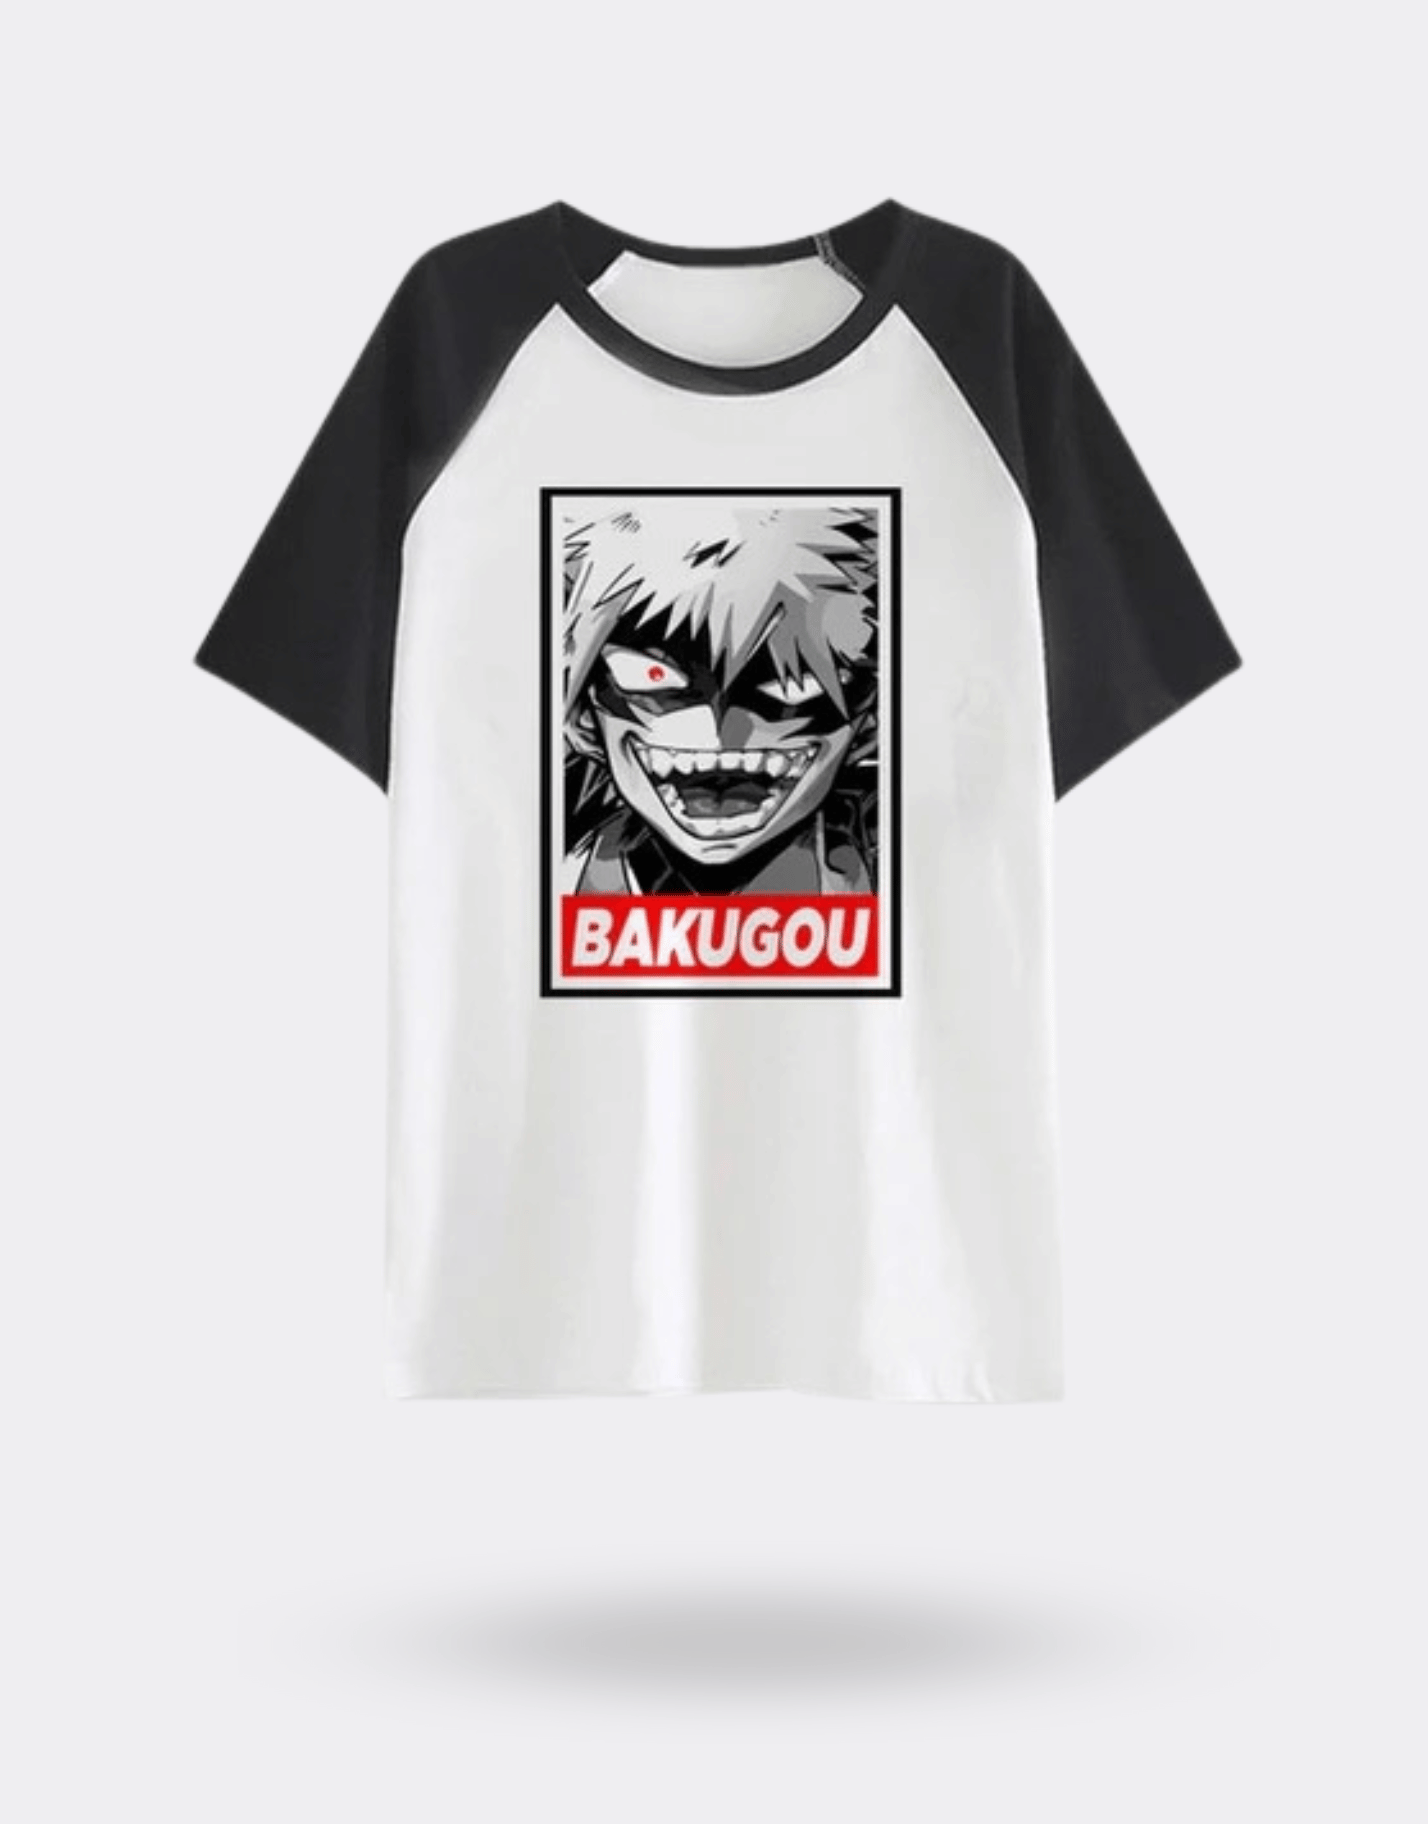 T-shirt Manga BAKUGO My Hero Academia